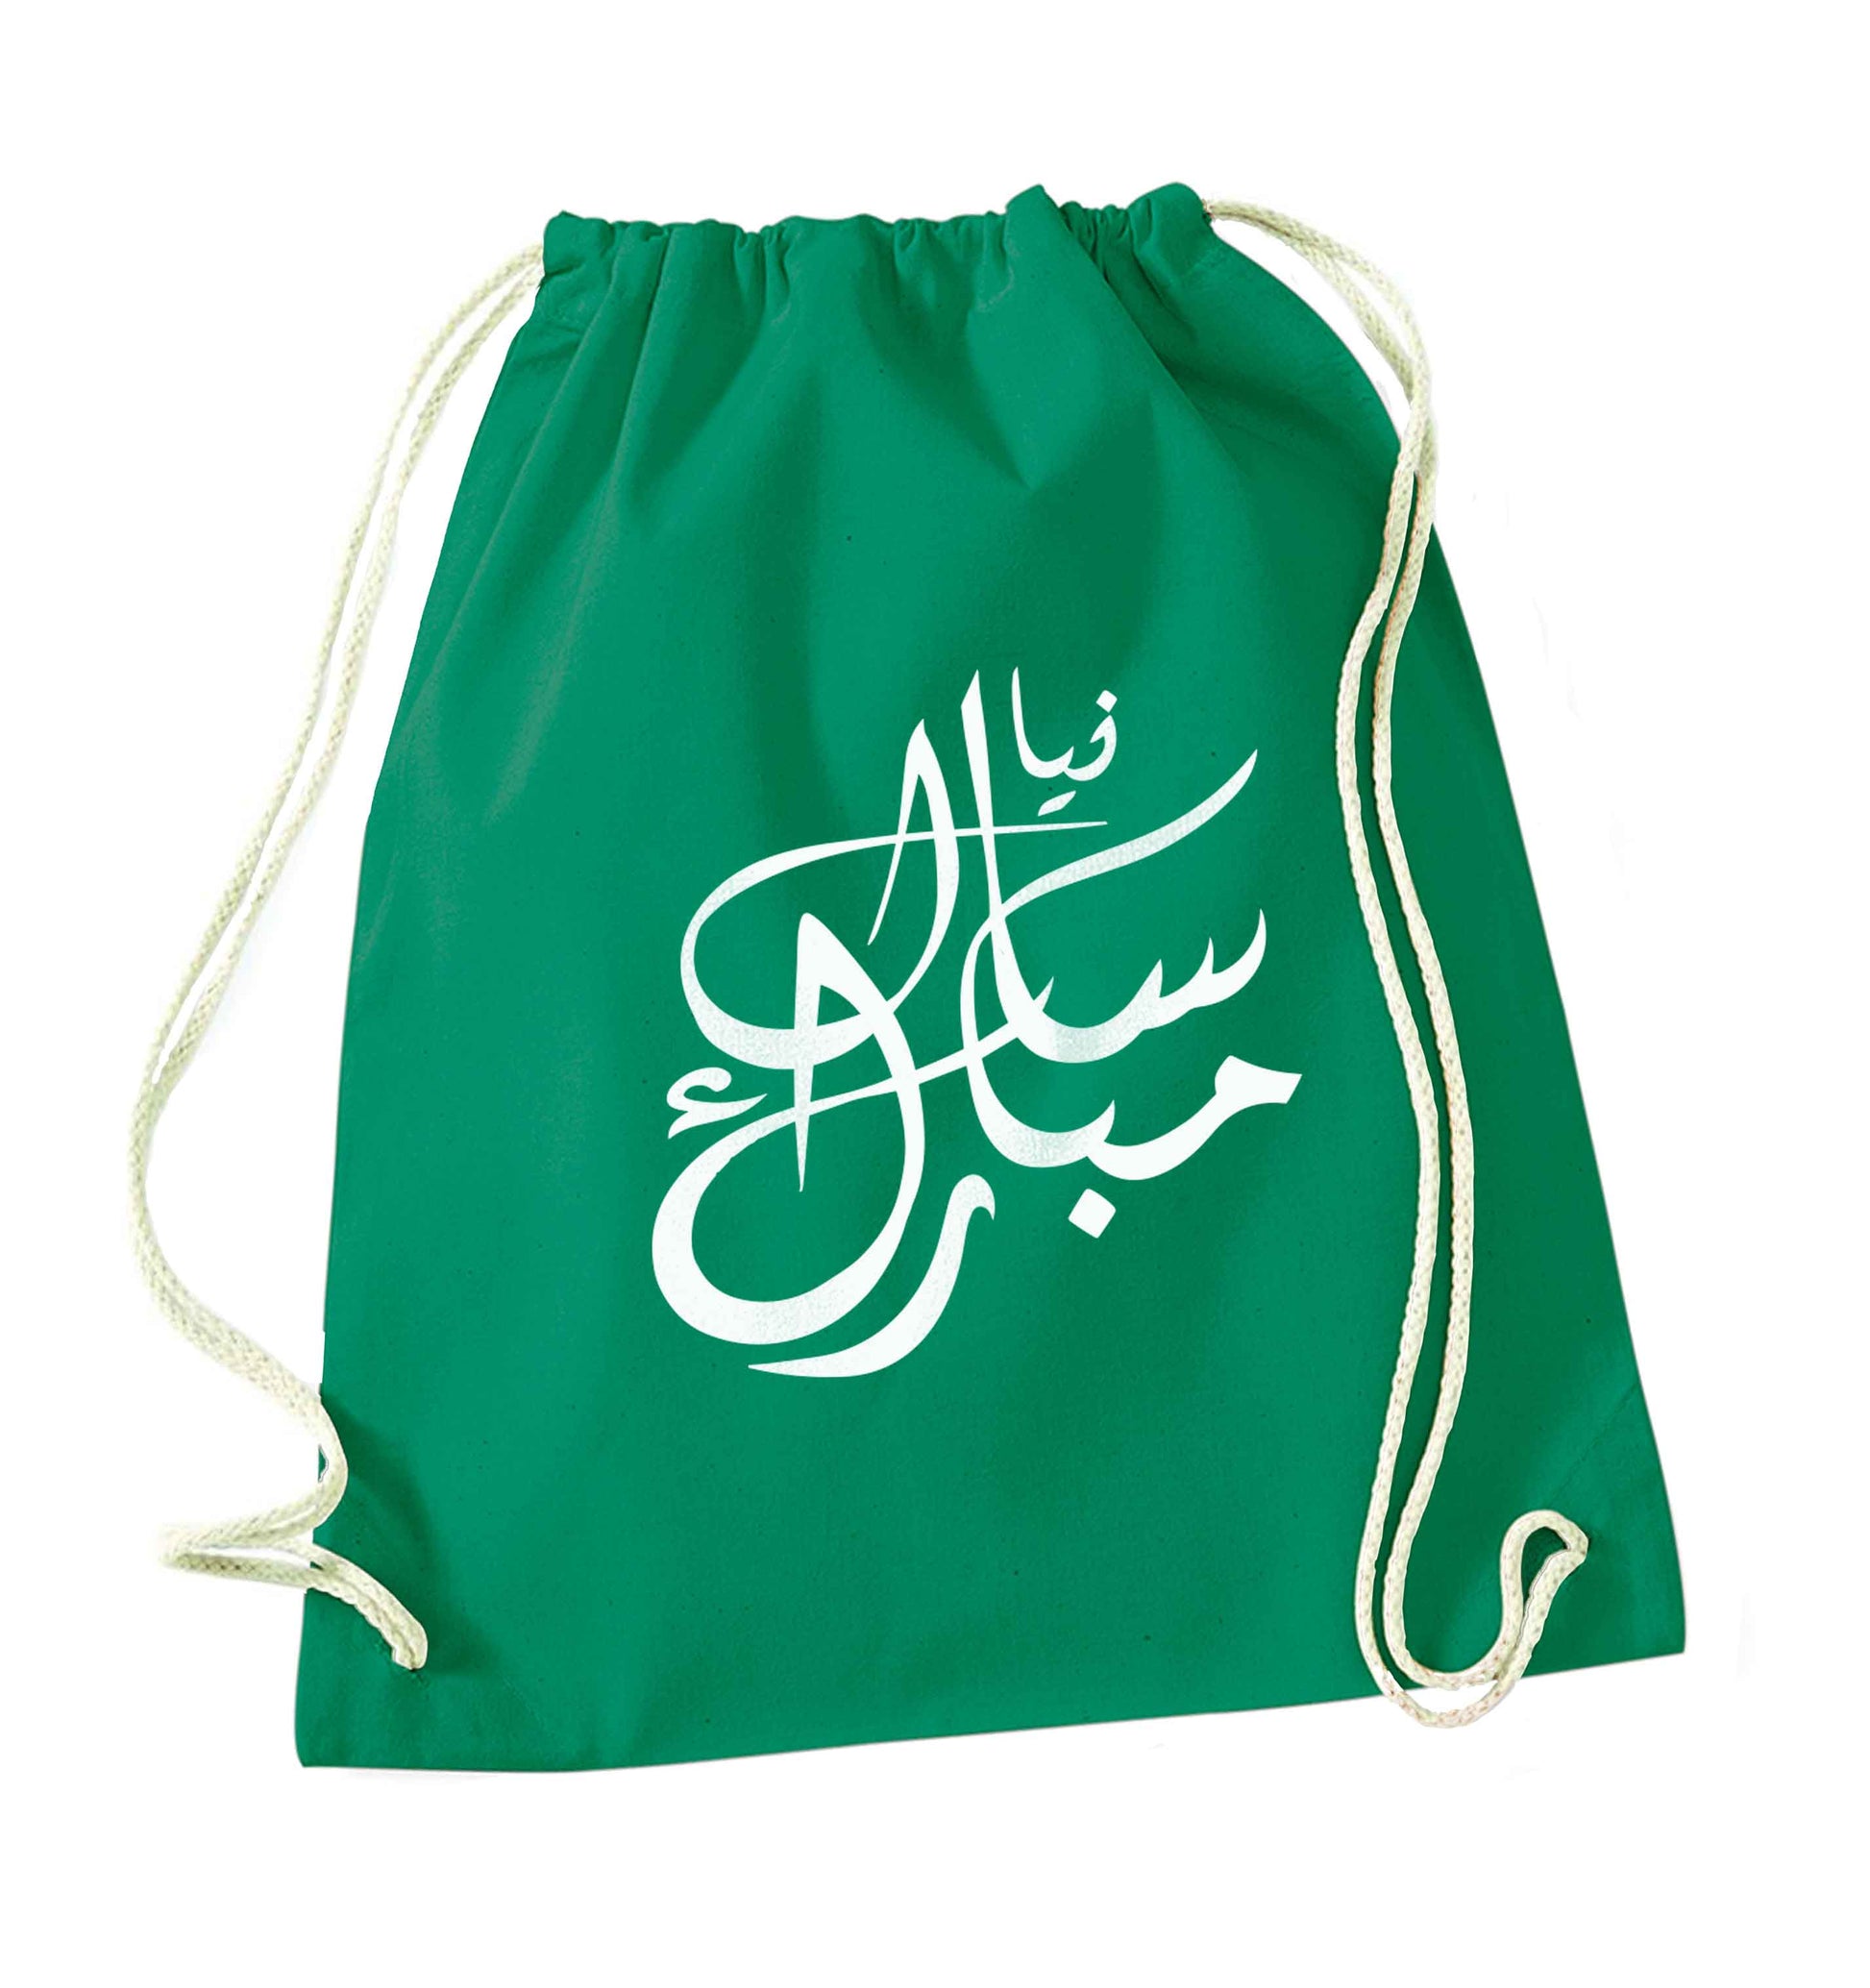 Urdu Naya saal mubarak green drawstring bag